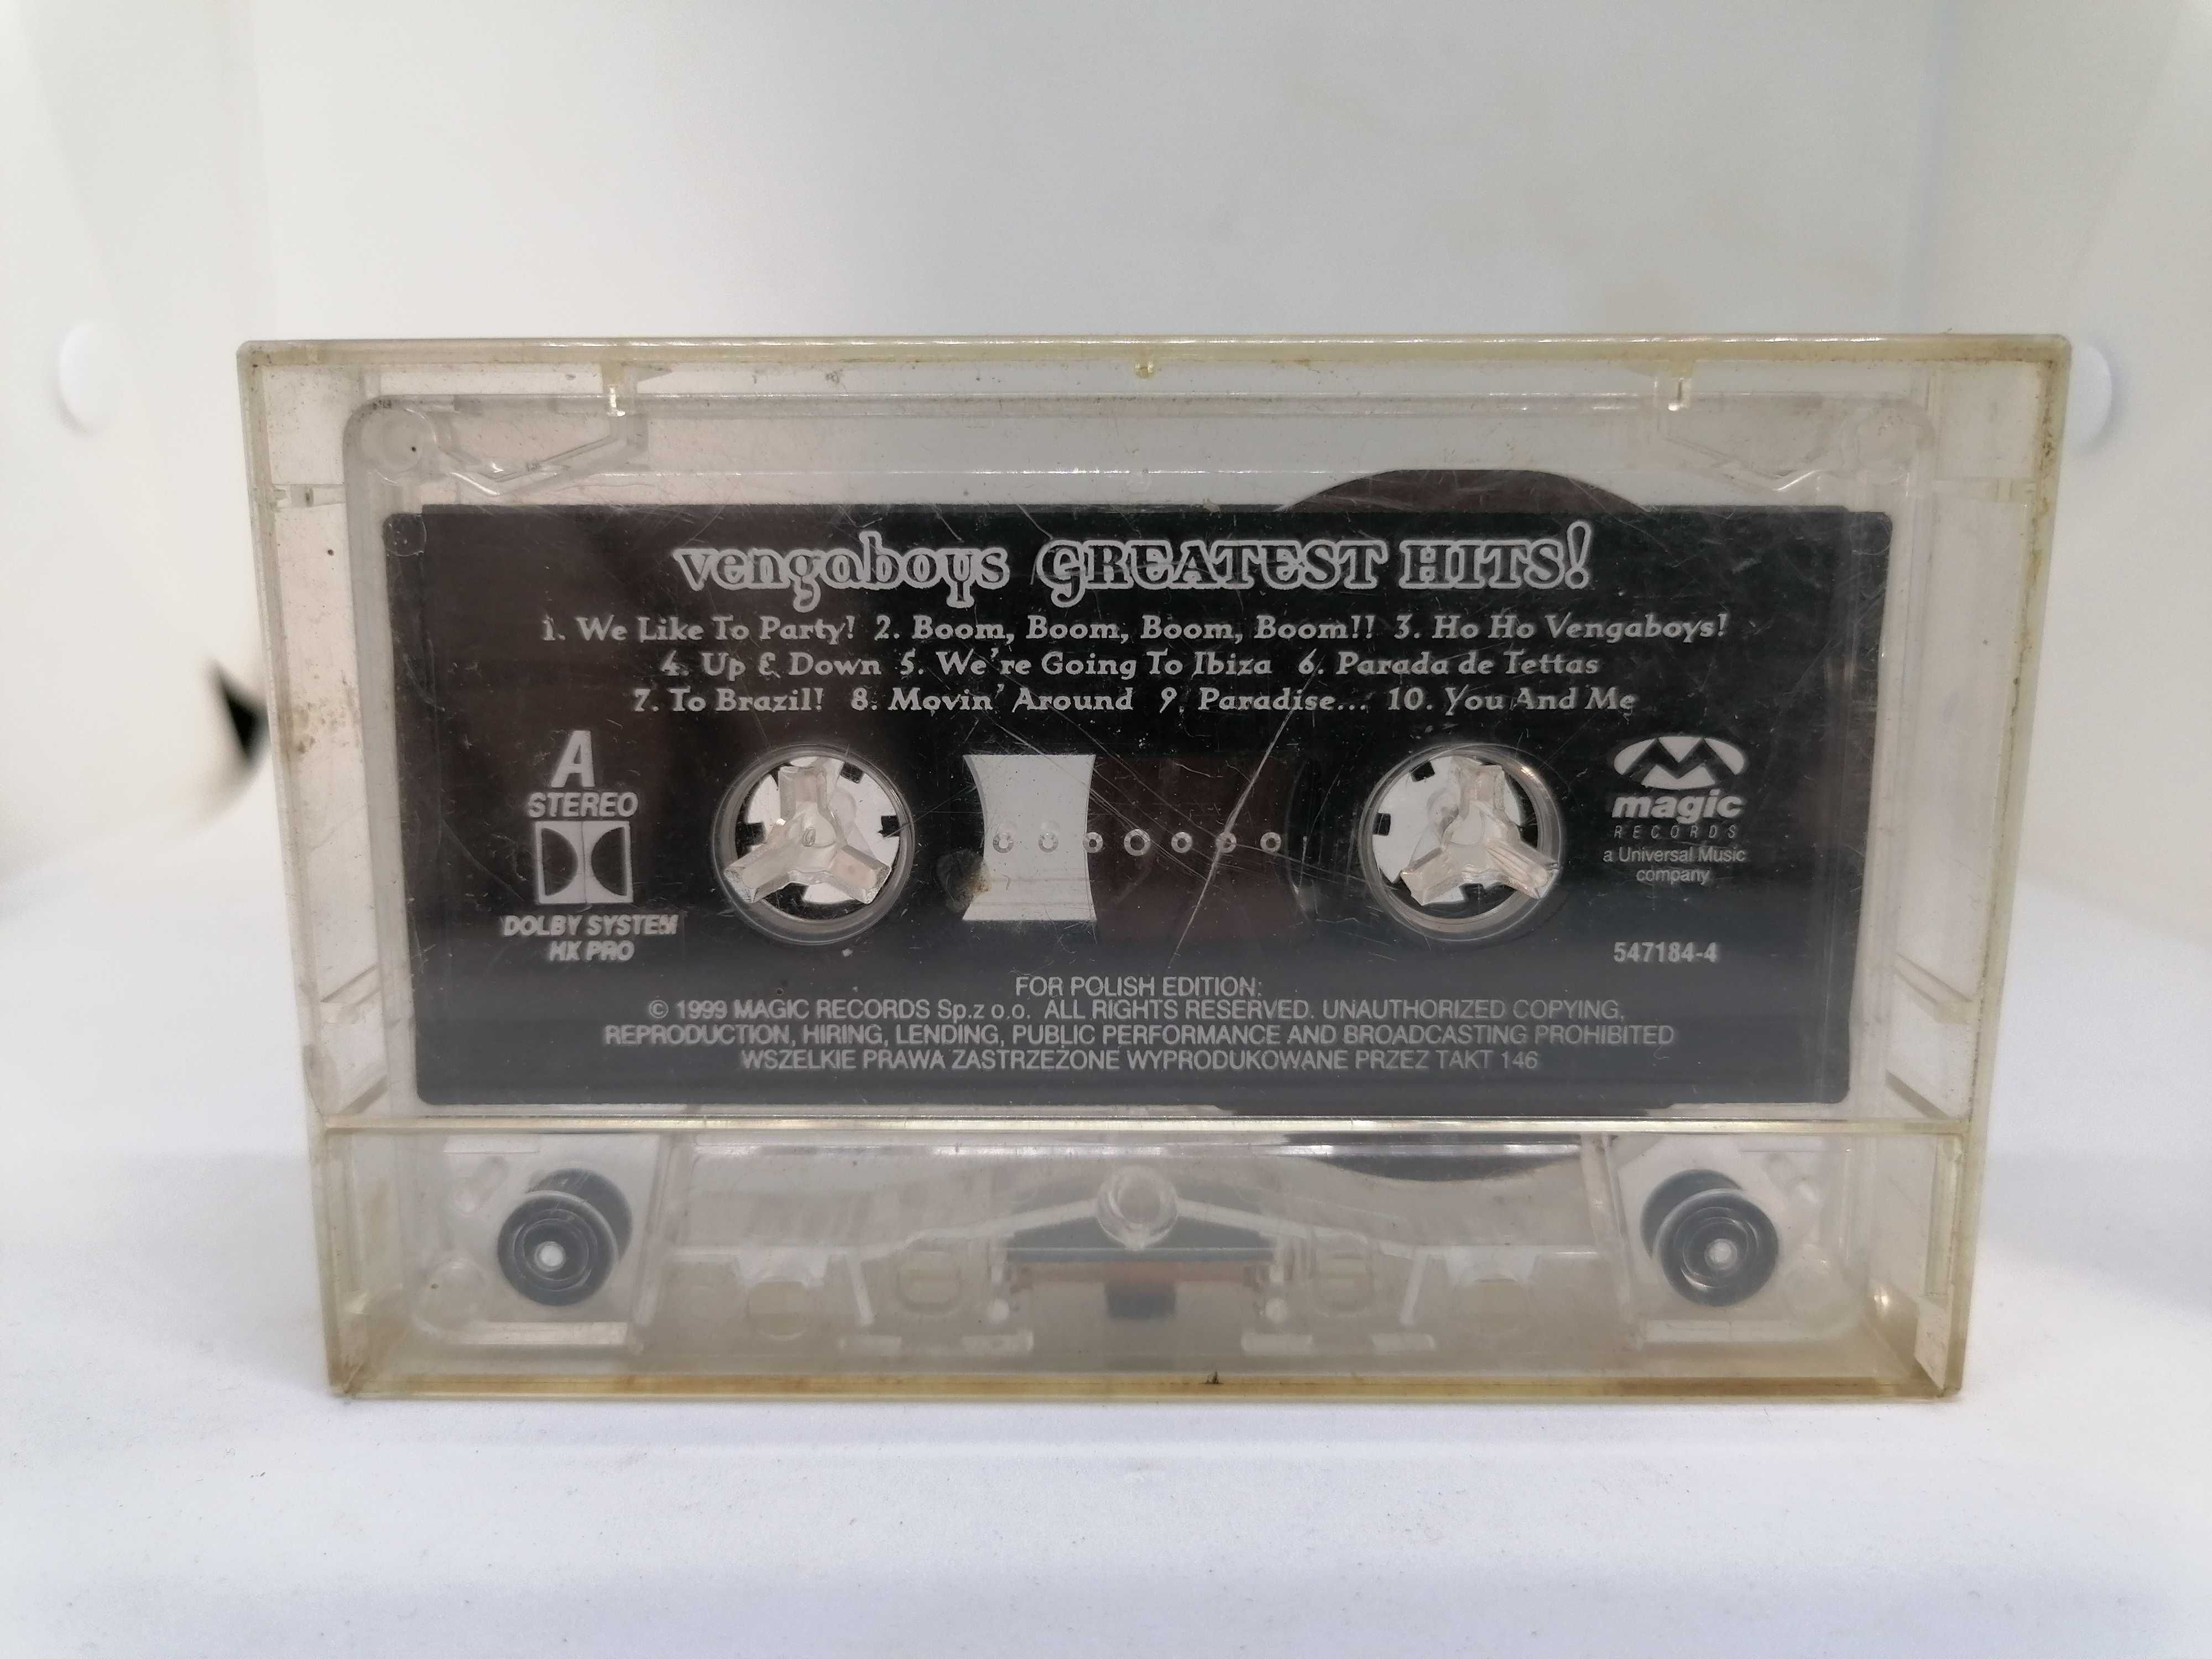 Vengaboys - Greatest Hits! - kaseta magnetofonowa